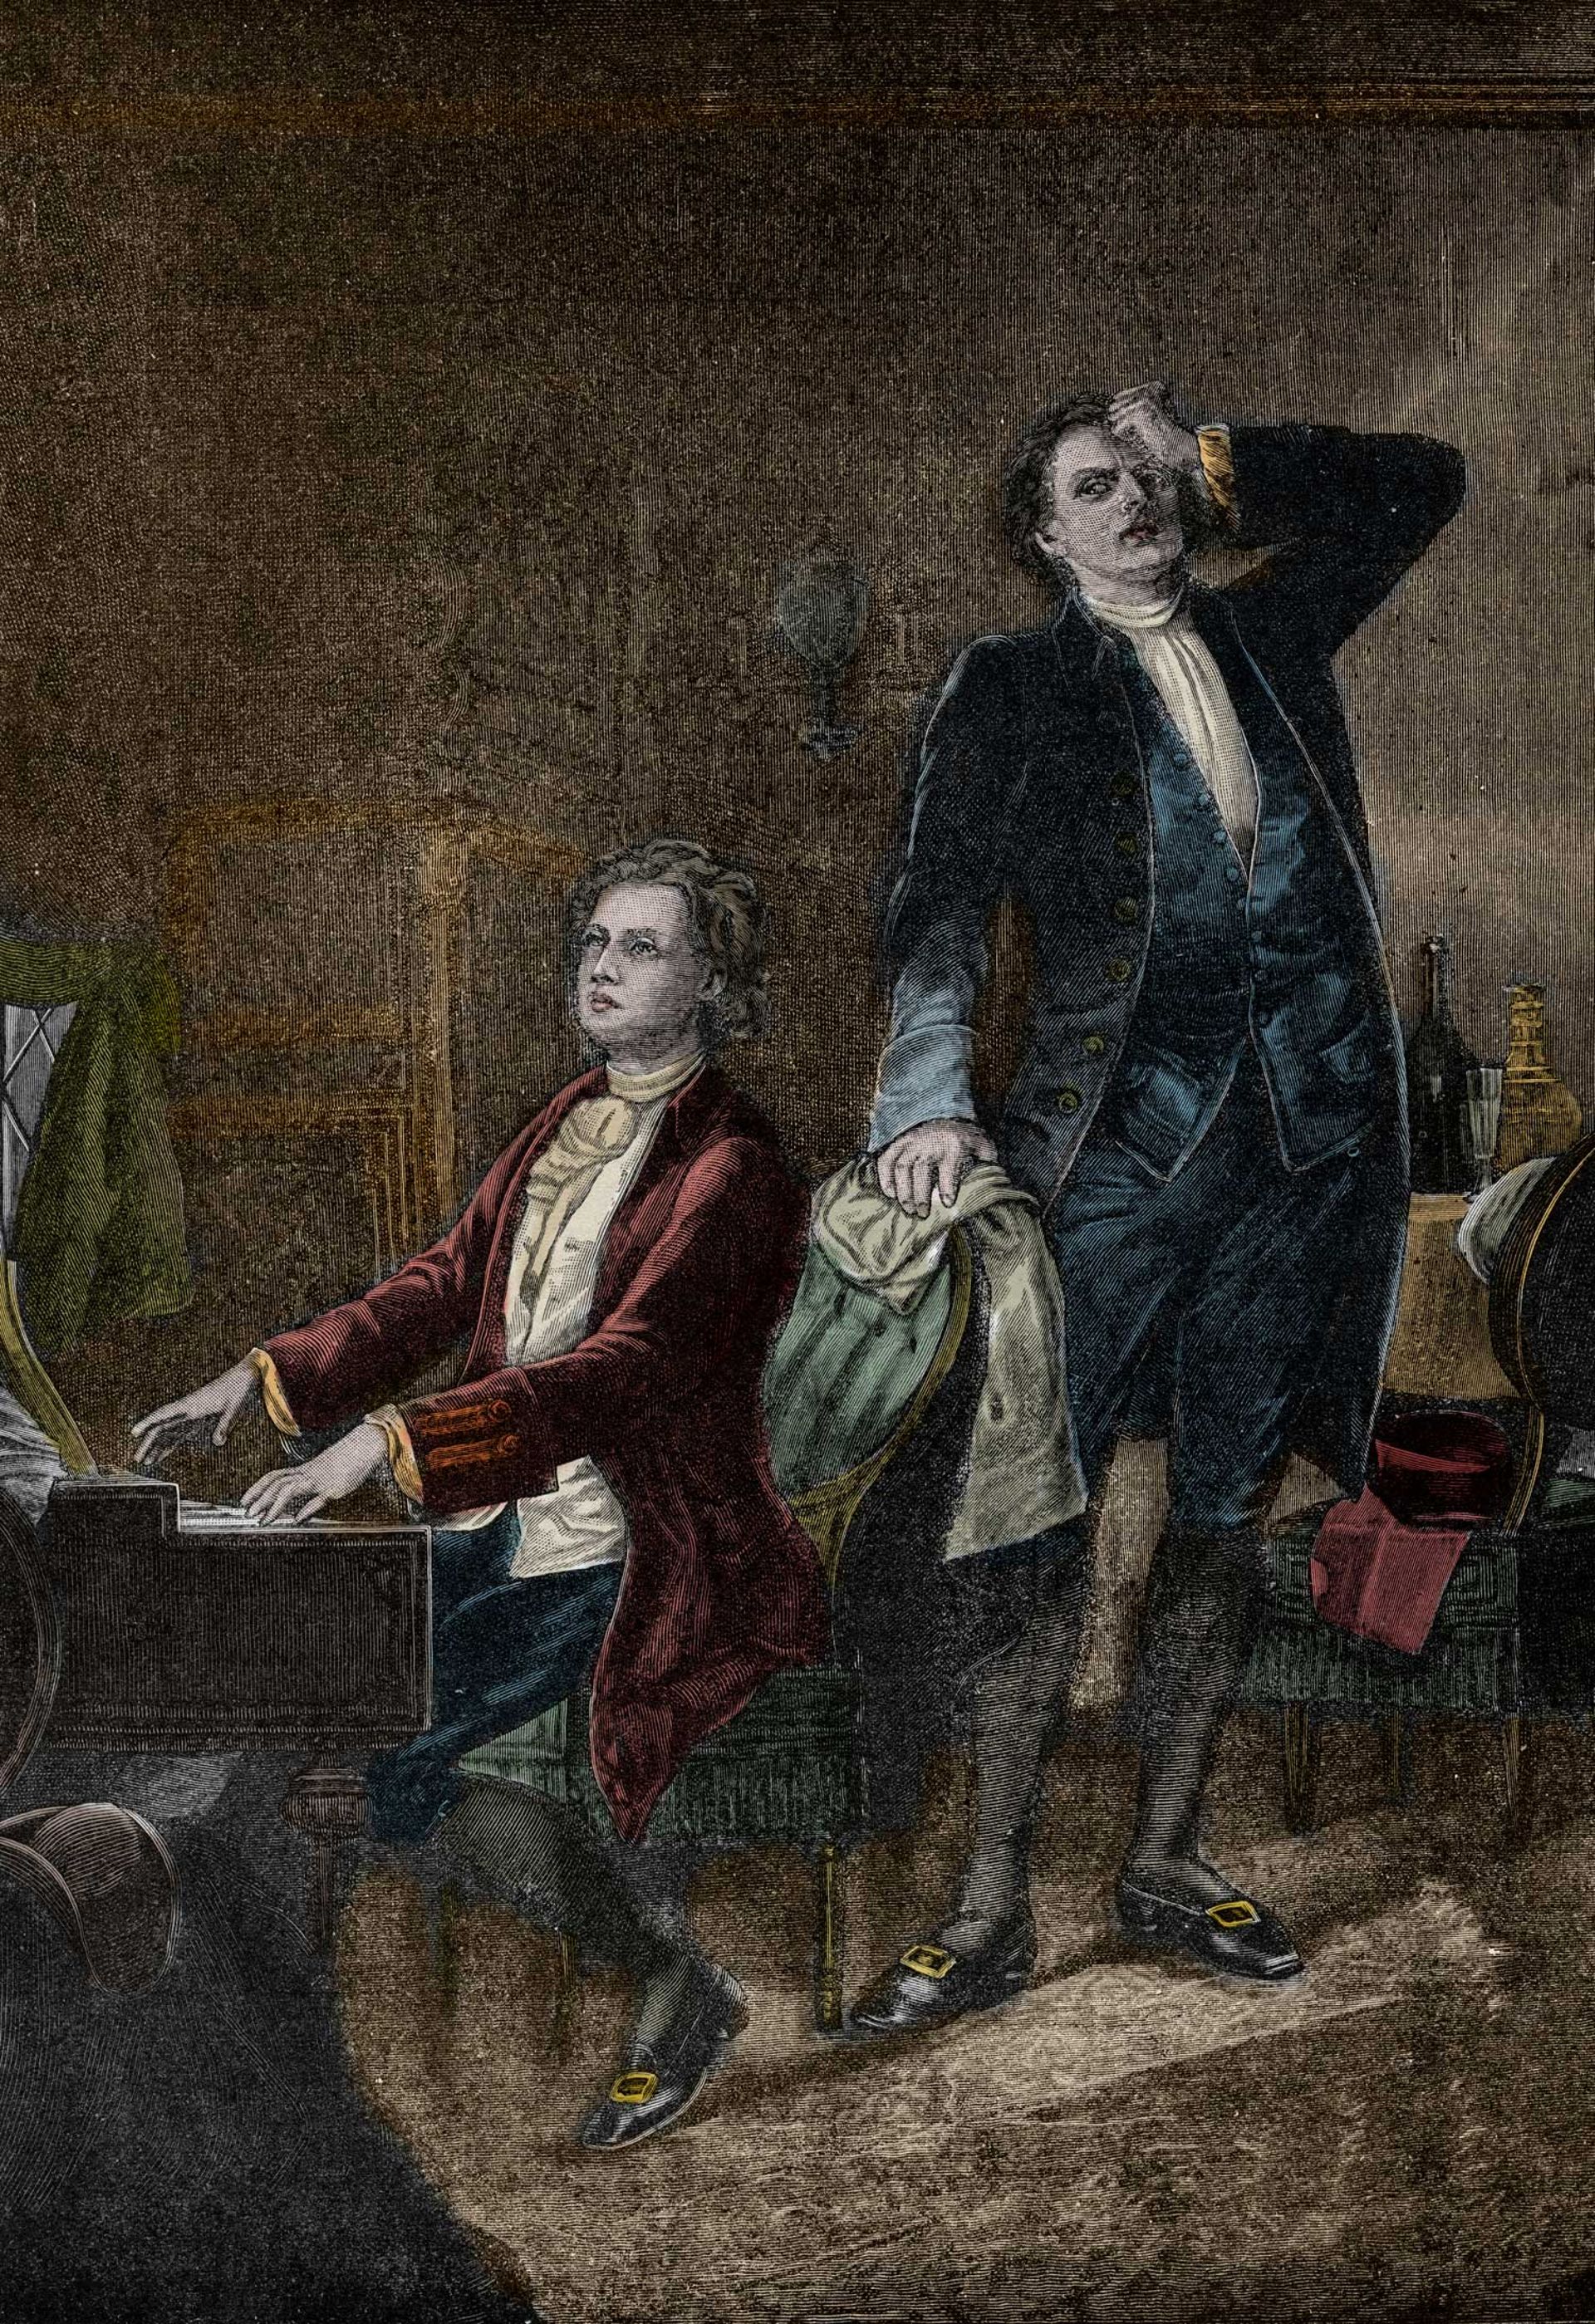 Illustration de la pièce de théâtre "Mozart and Salieri" de Pouchkine